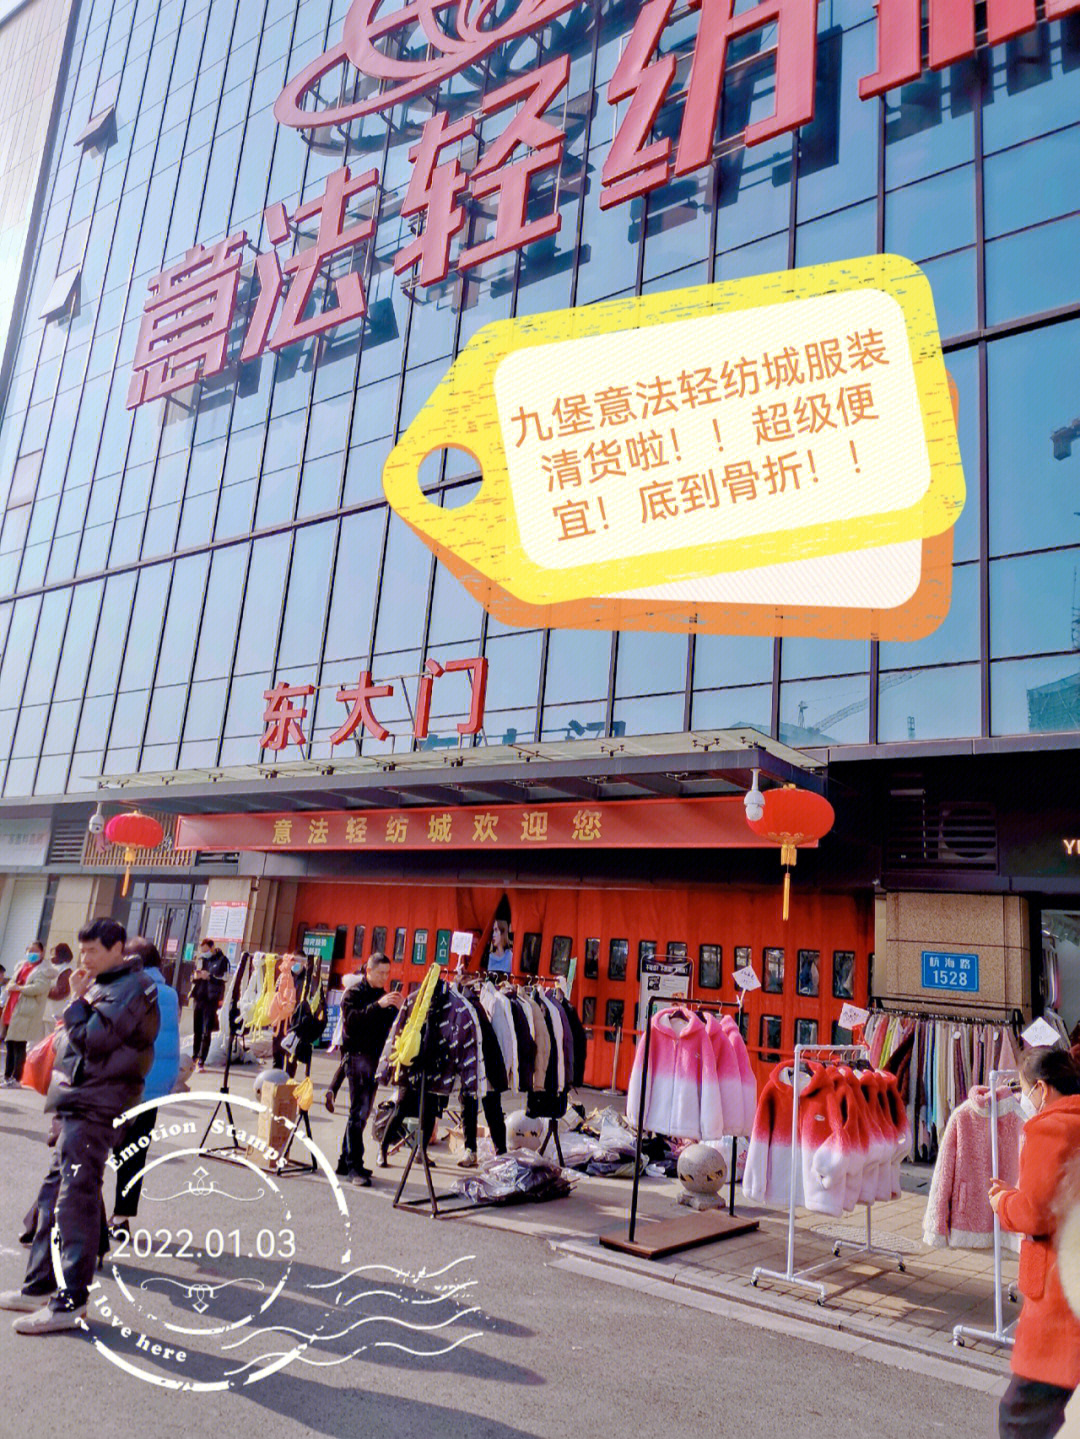 7815杭州九堡意法轻纺城,一楼二楼是卖面辅料,四楼很多服装工作室